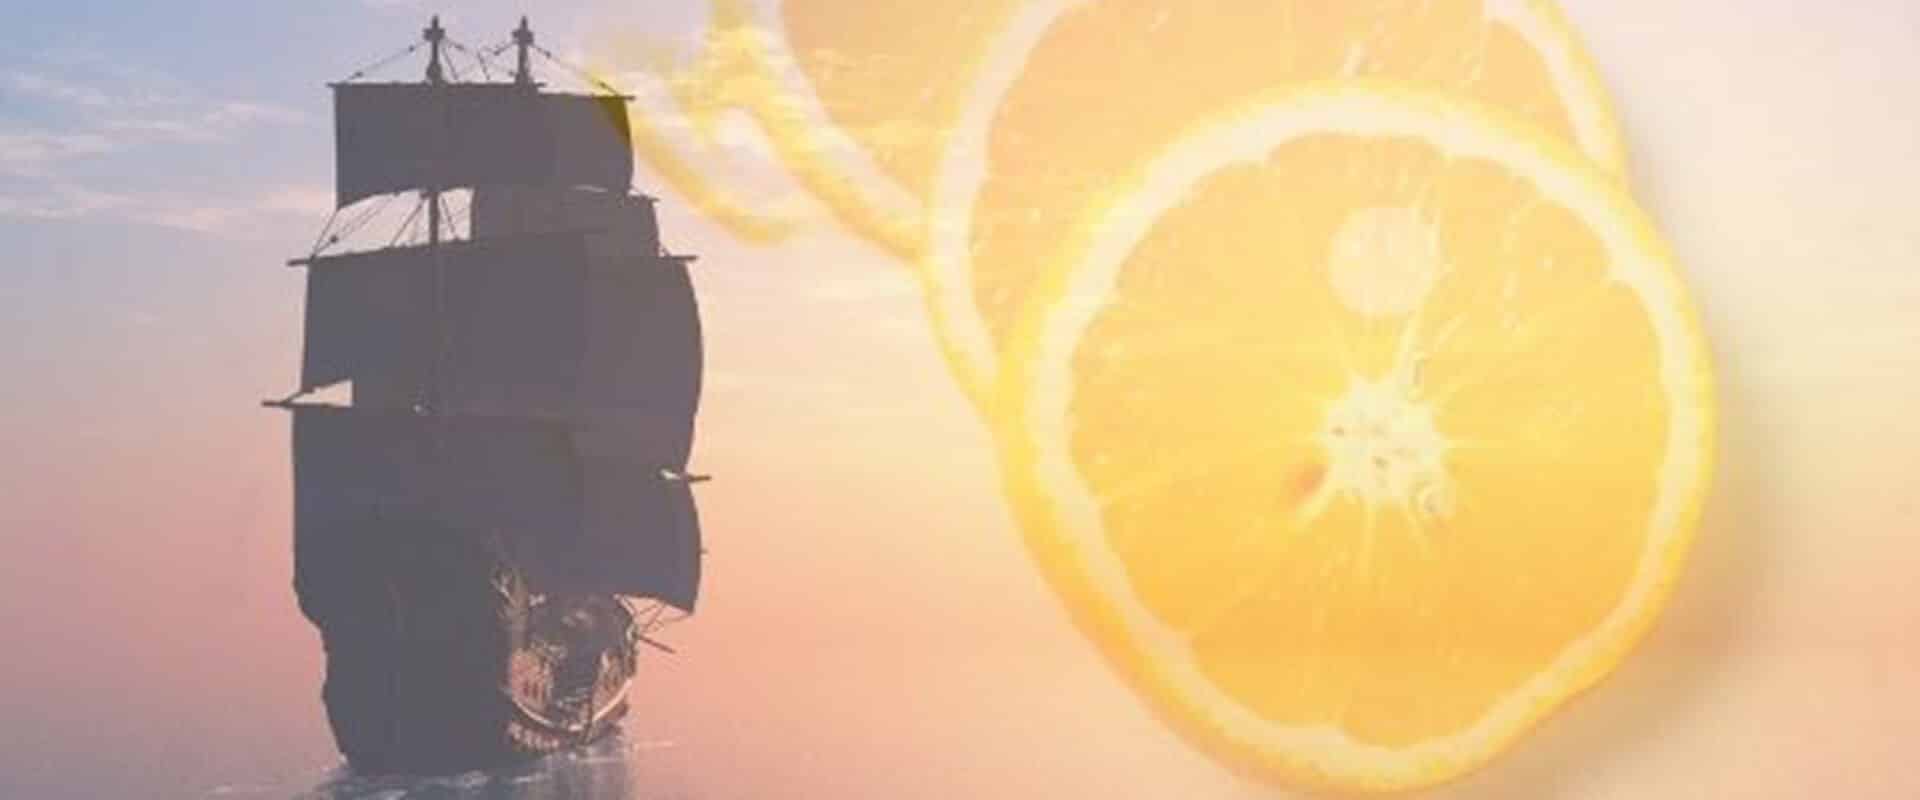 Seefahrer-Schiff kombiniert mit Zitrusfrüchten als Symbol für Vitamin C